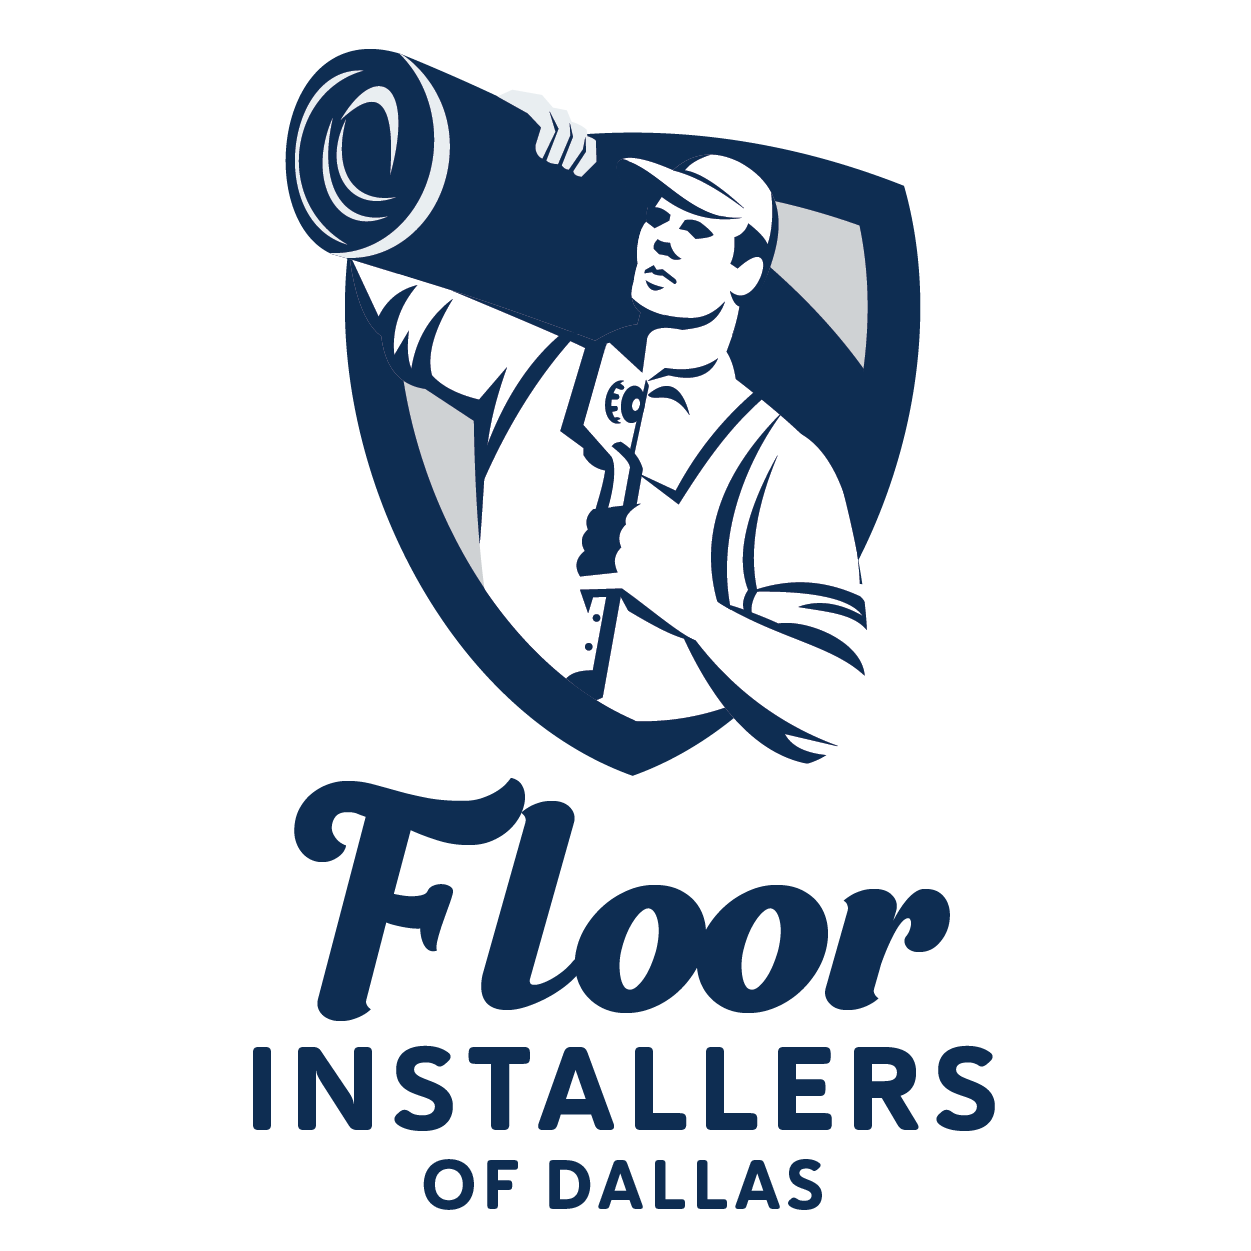 Floor Installers of Dallas - Home Facebook Logo